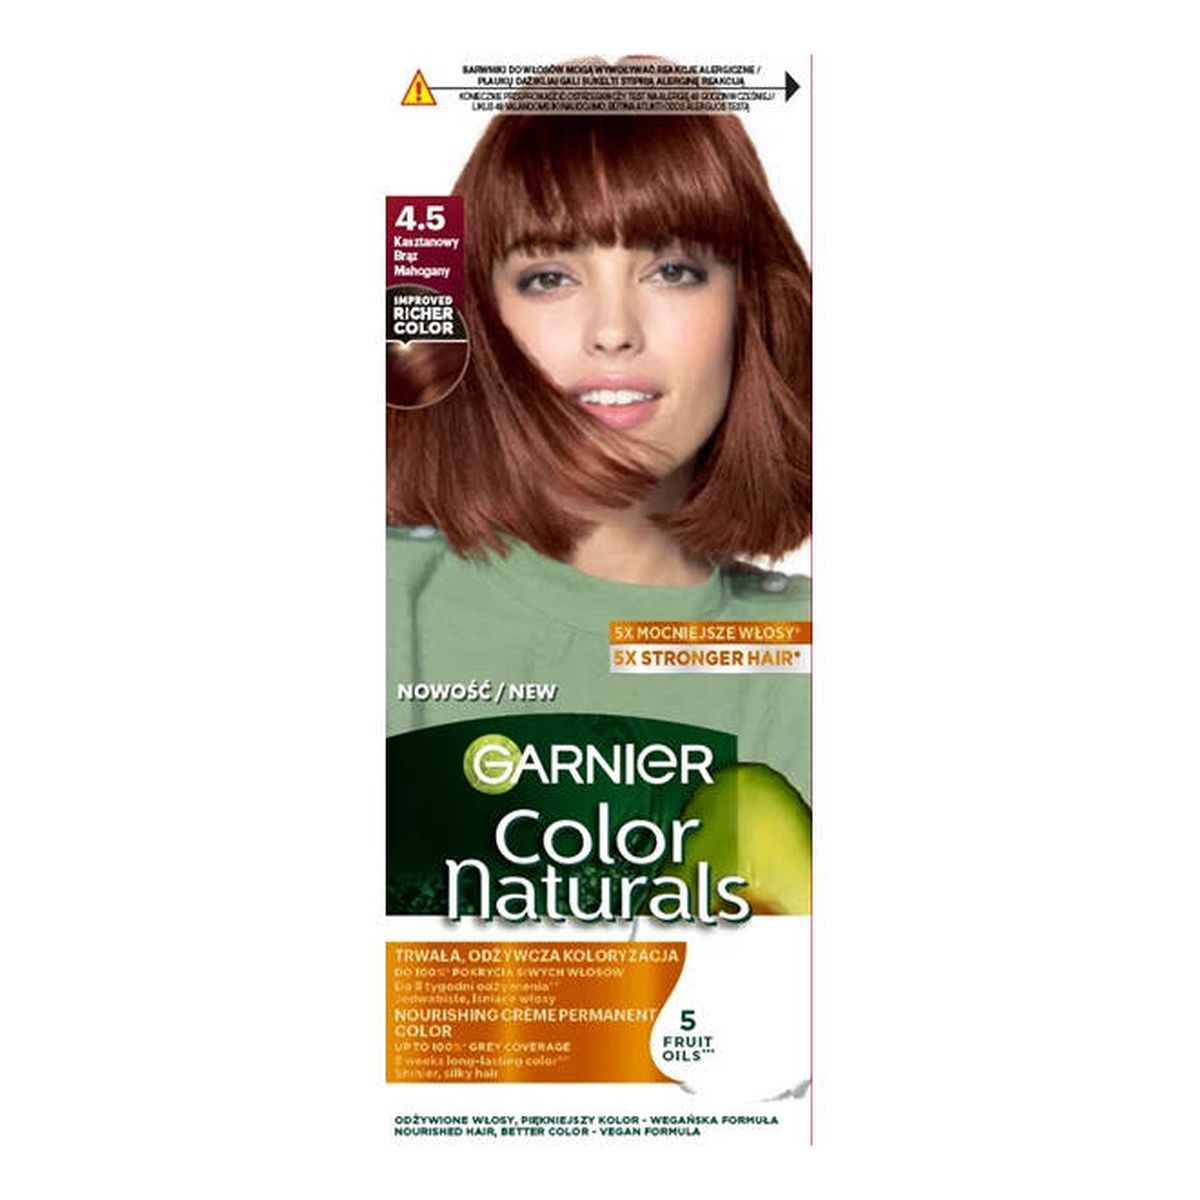 Garnier Color naturals odżywcza farba do włosów 4.5 kasztanowy brąz